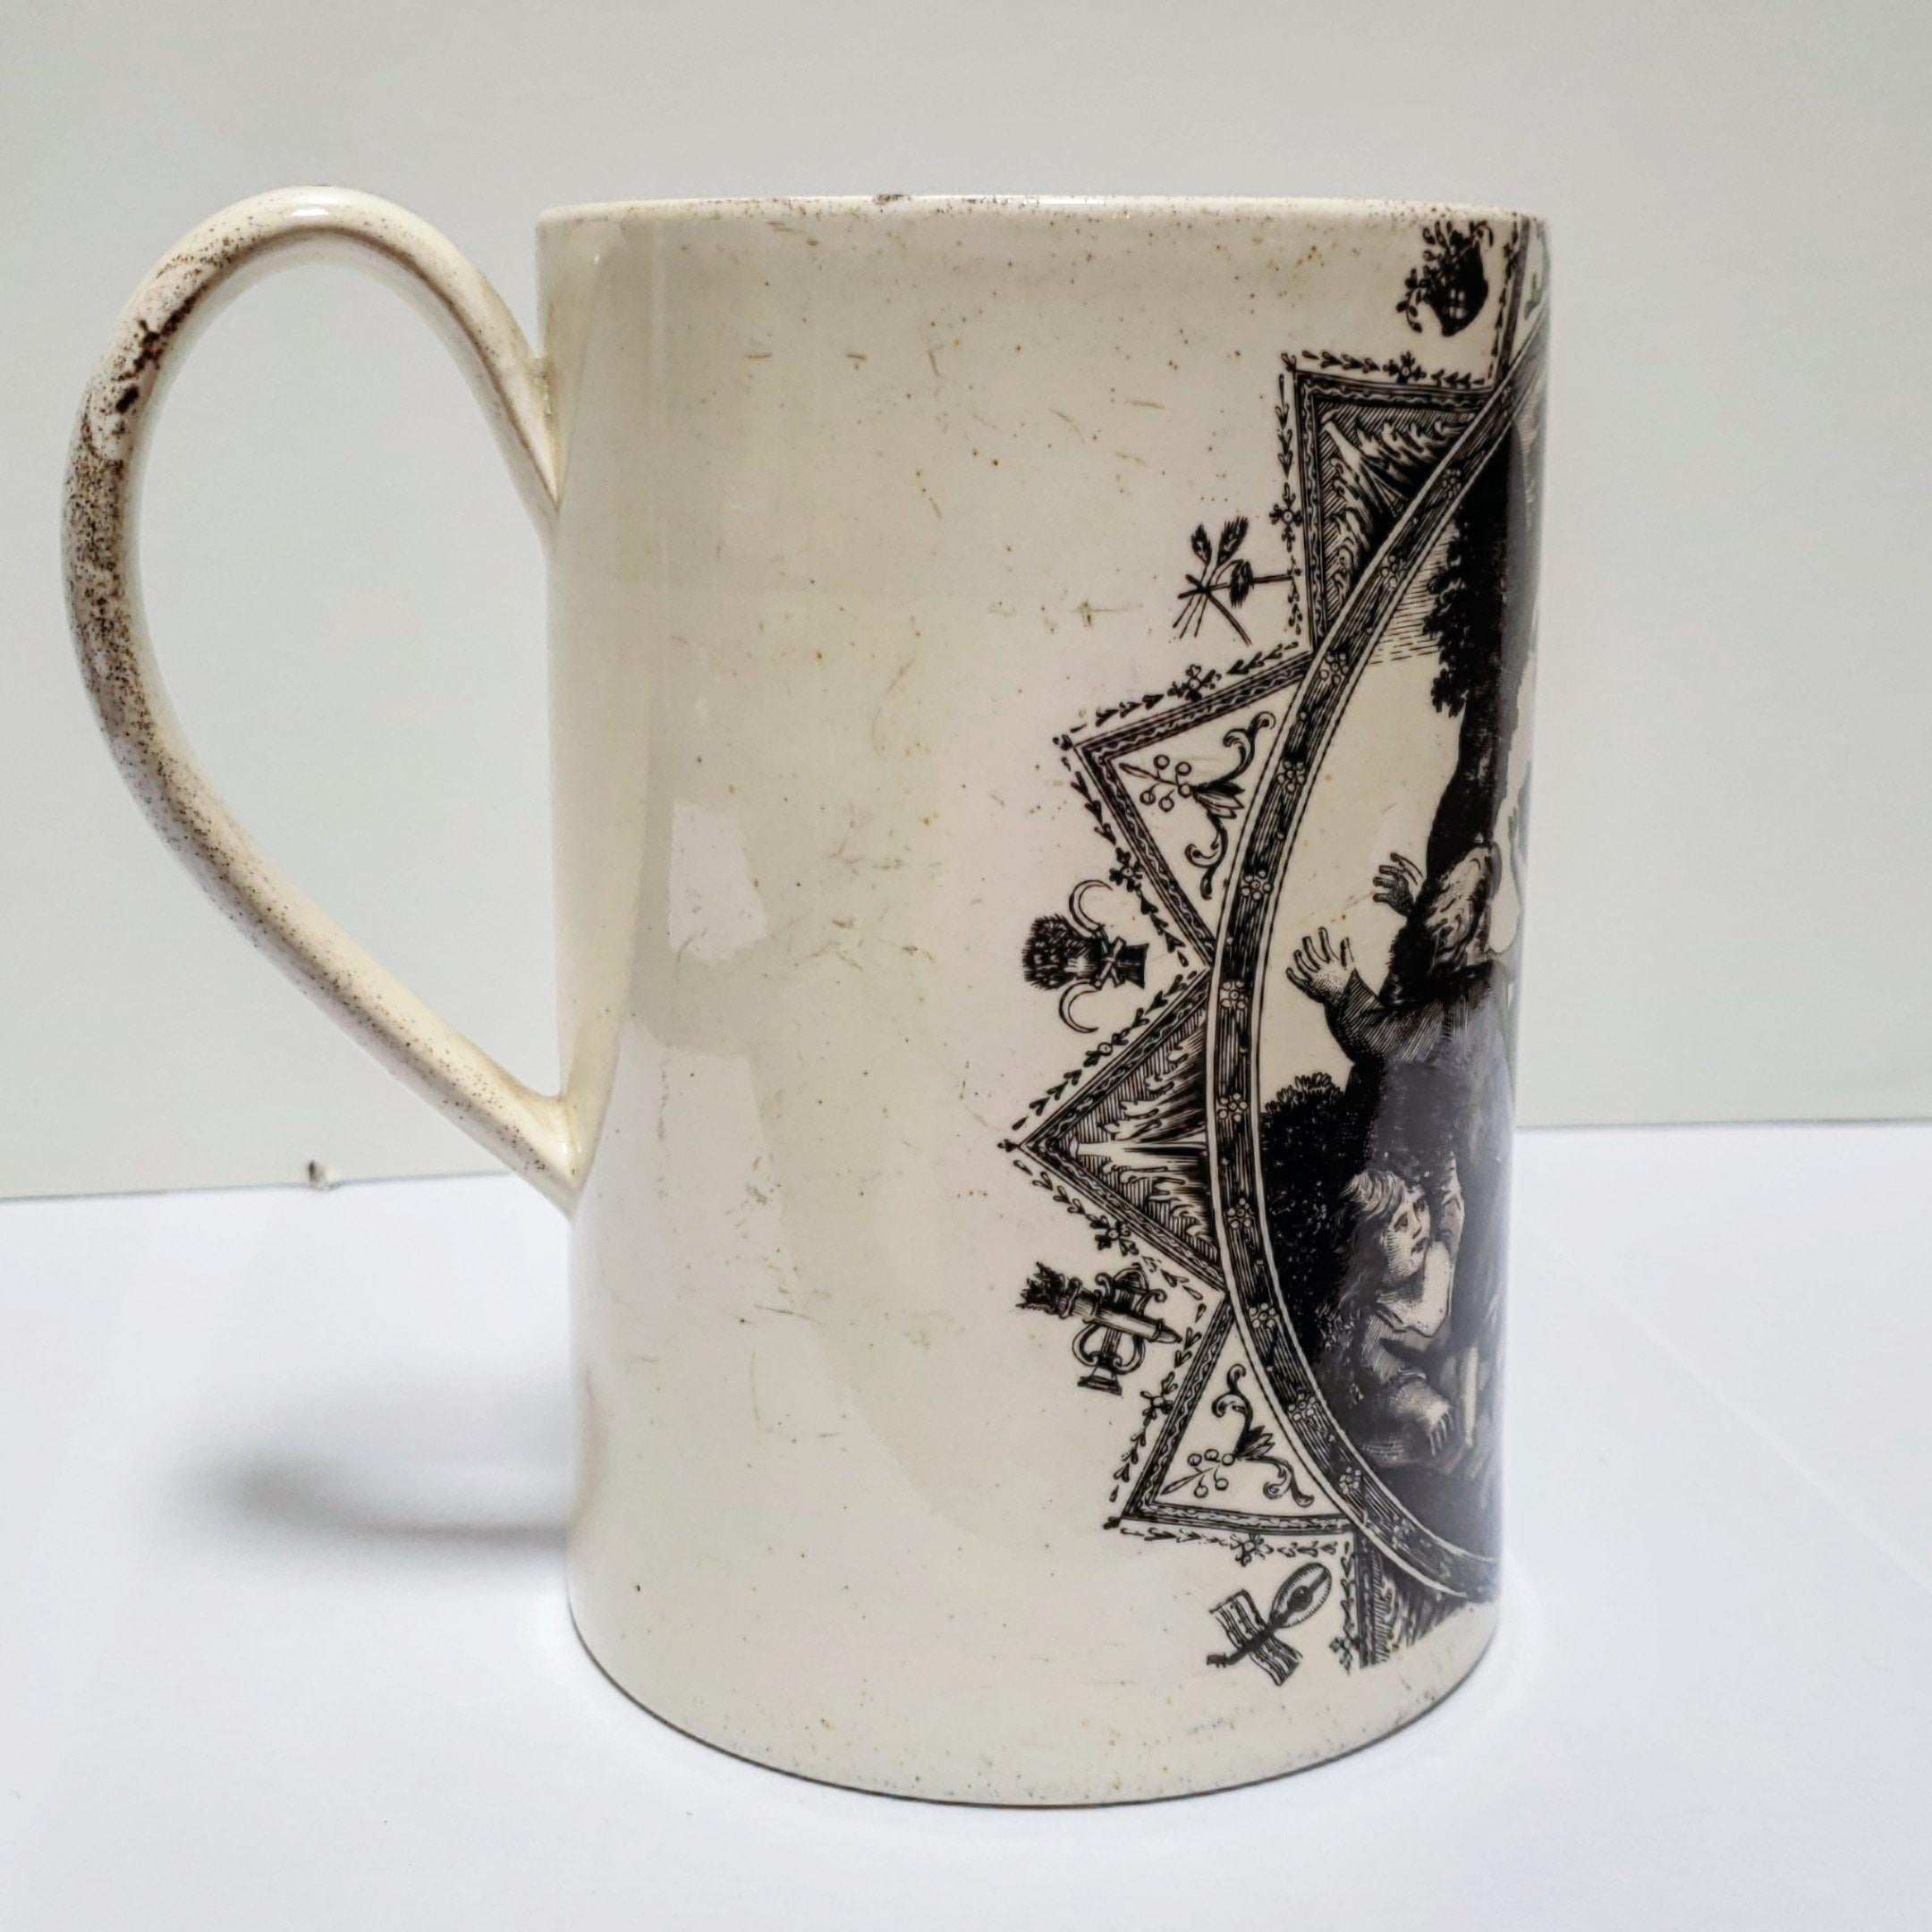 Neoclassical 18th Century Creamware Liverpool-Type Mug